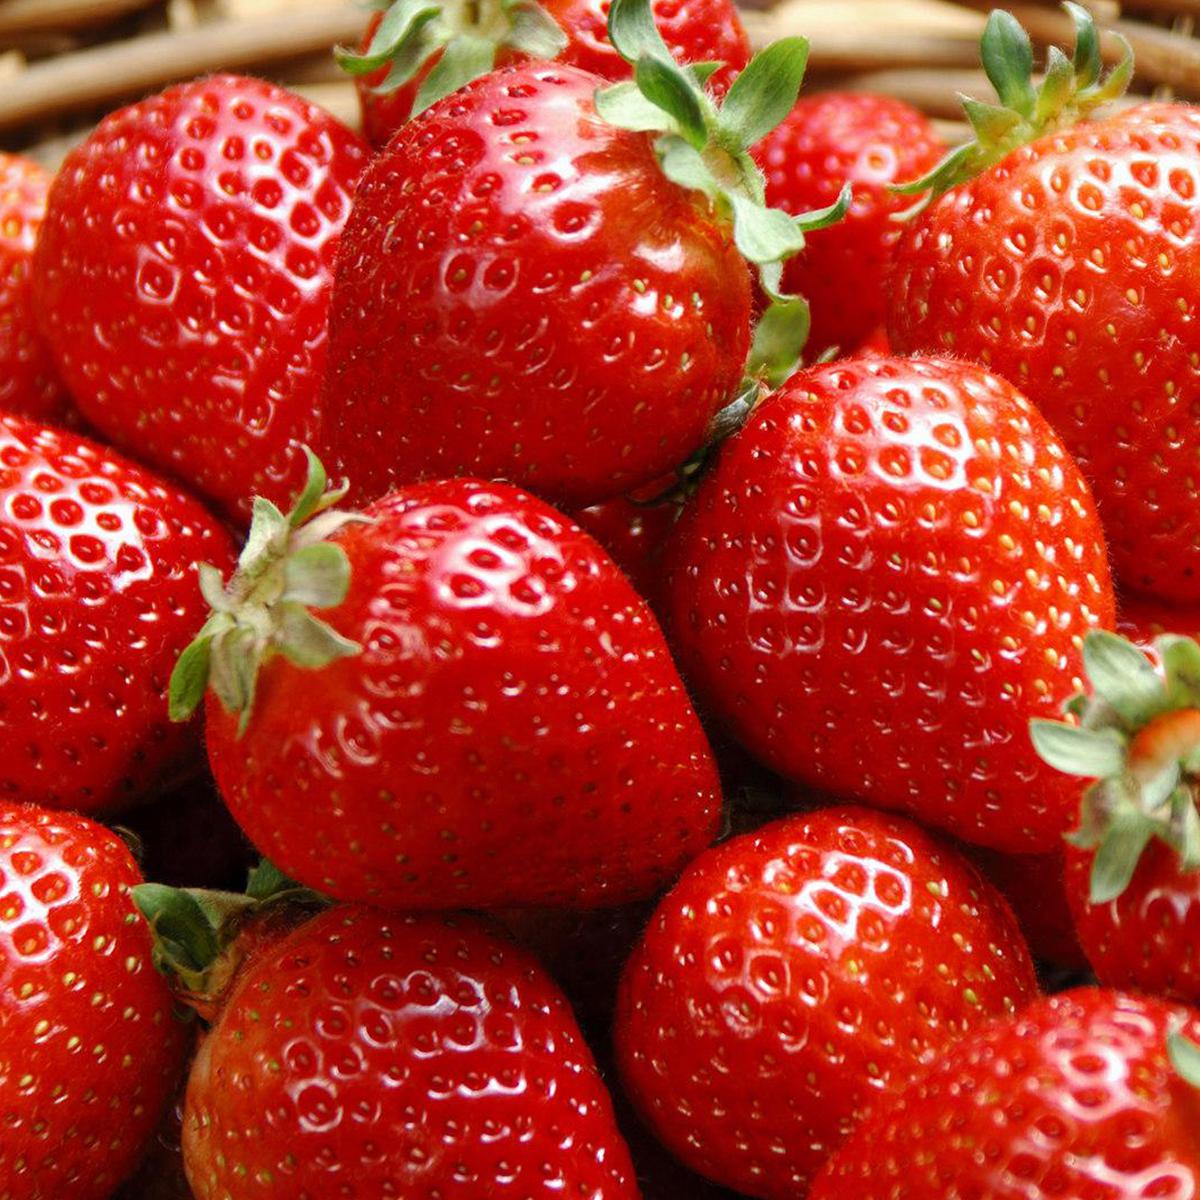 Strawberry berkembang biak dengan